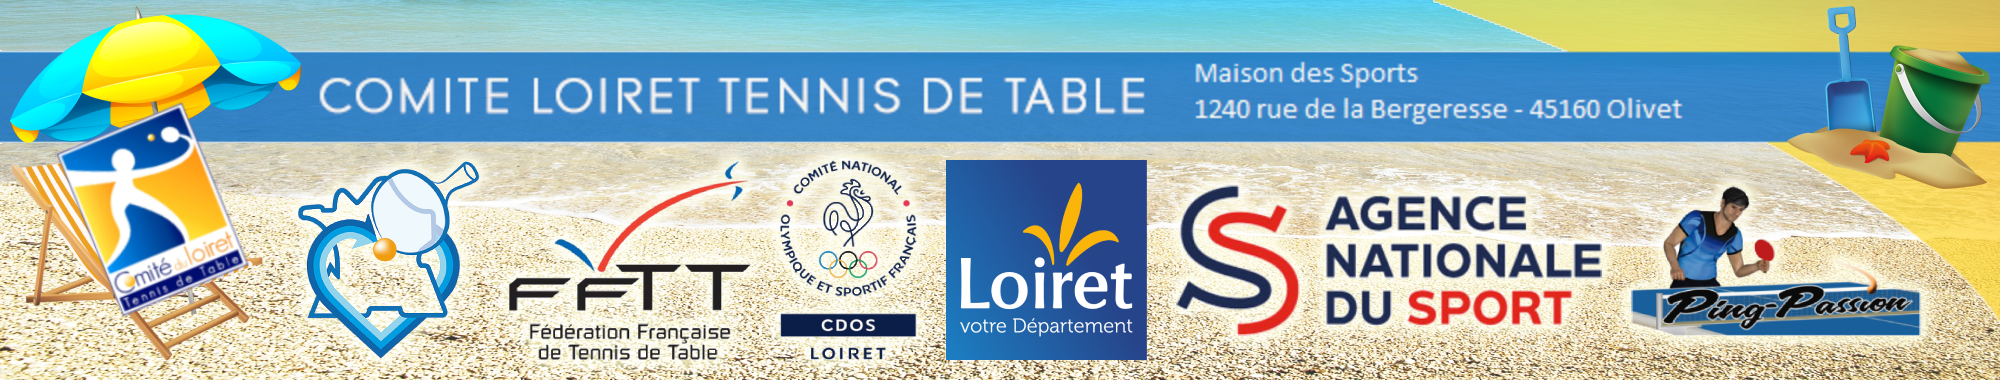 Comité du Loiret de Tennis de Table